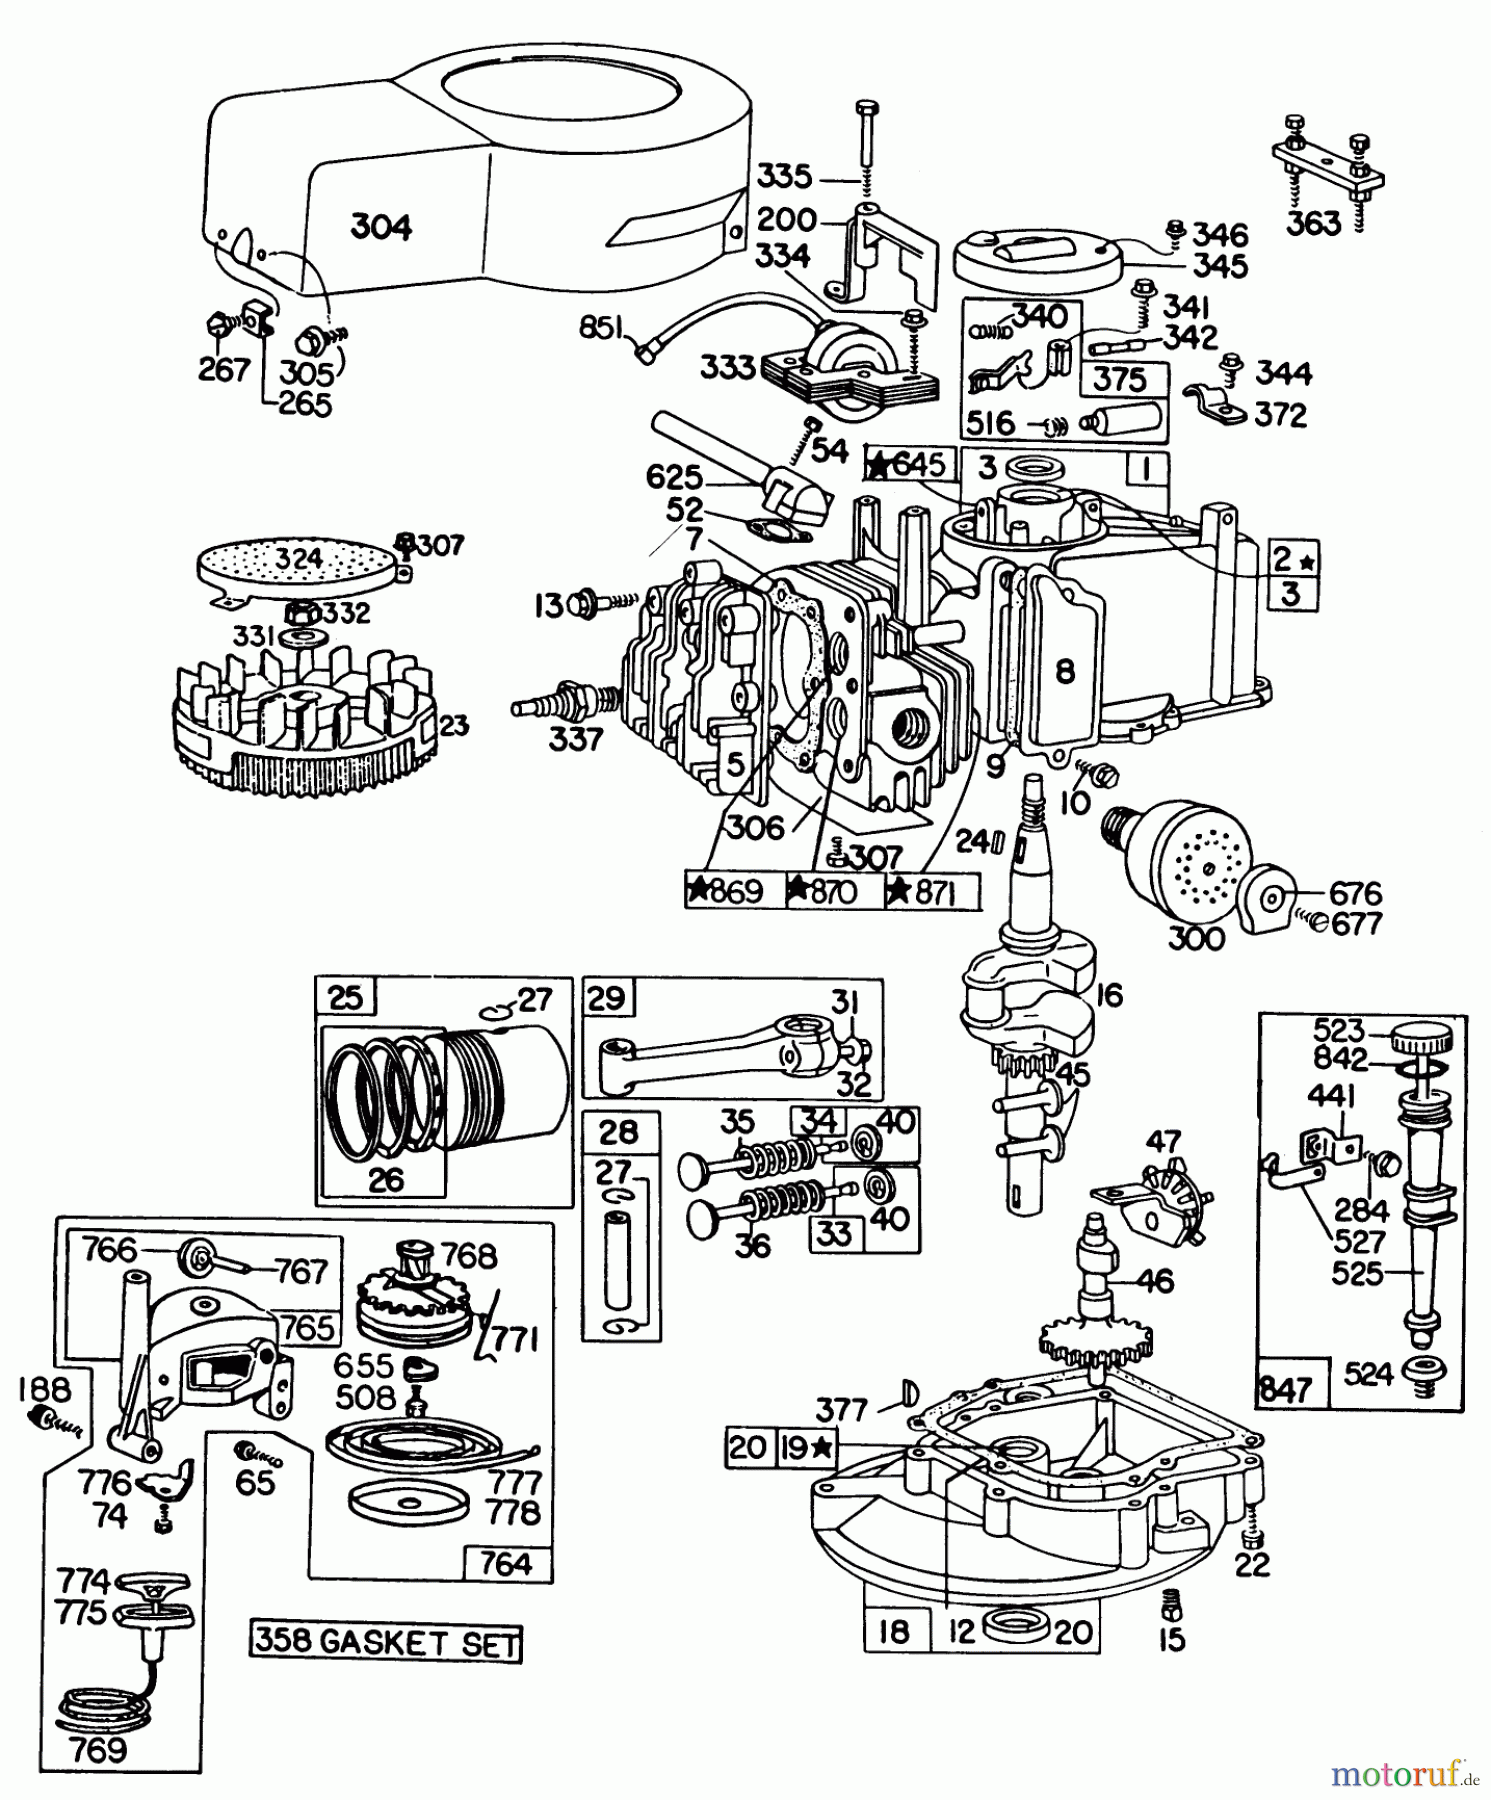  Toro Neu Mowers, Walk-Behind Seite 1 16310 - Toro Lawnmower, 1980 (0000001-0999999) ENGINE BRIGGS & STRATTON MODEL 92908-2053-01 FOR 21